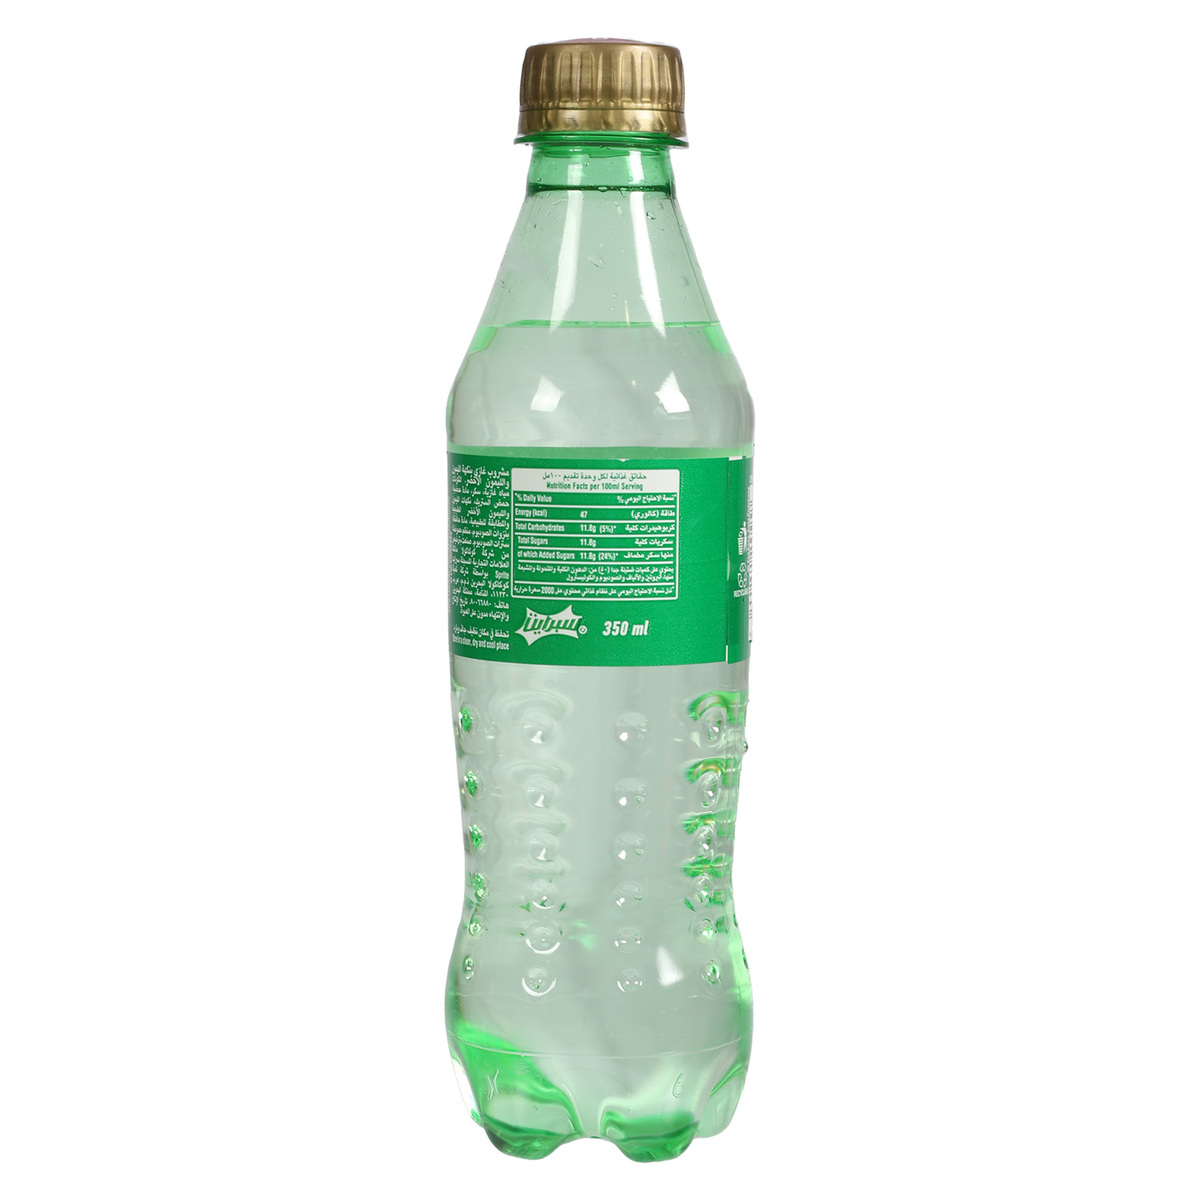 Sprite Lemon Lime Flavour Bottle Value Pack 6 x 350 ml